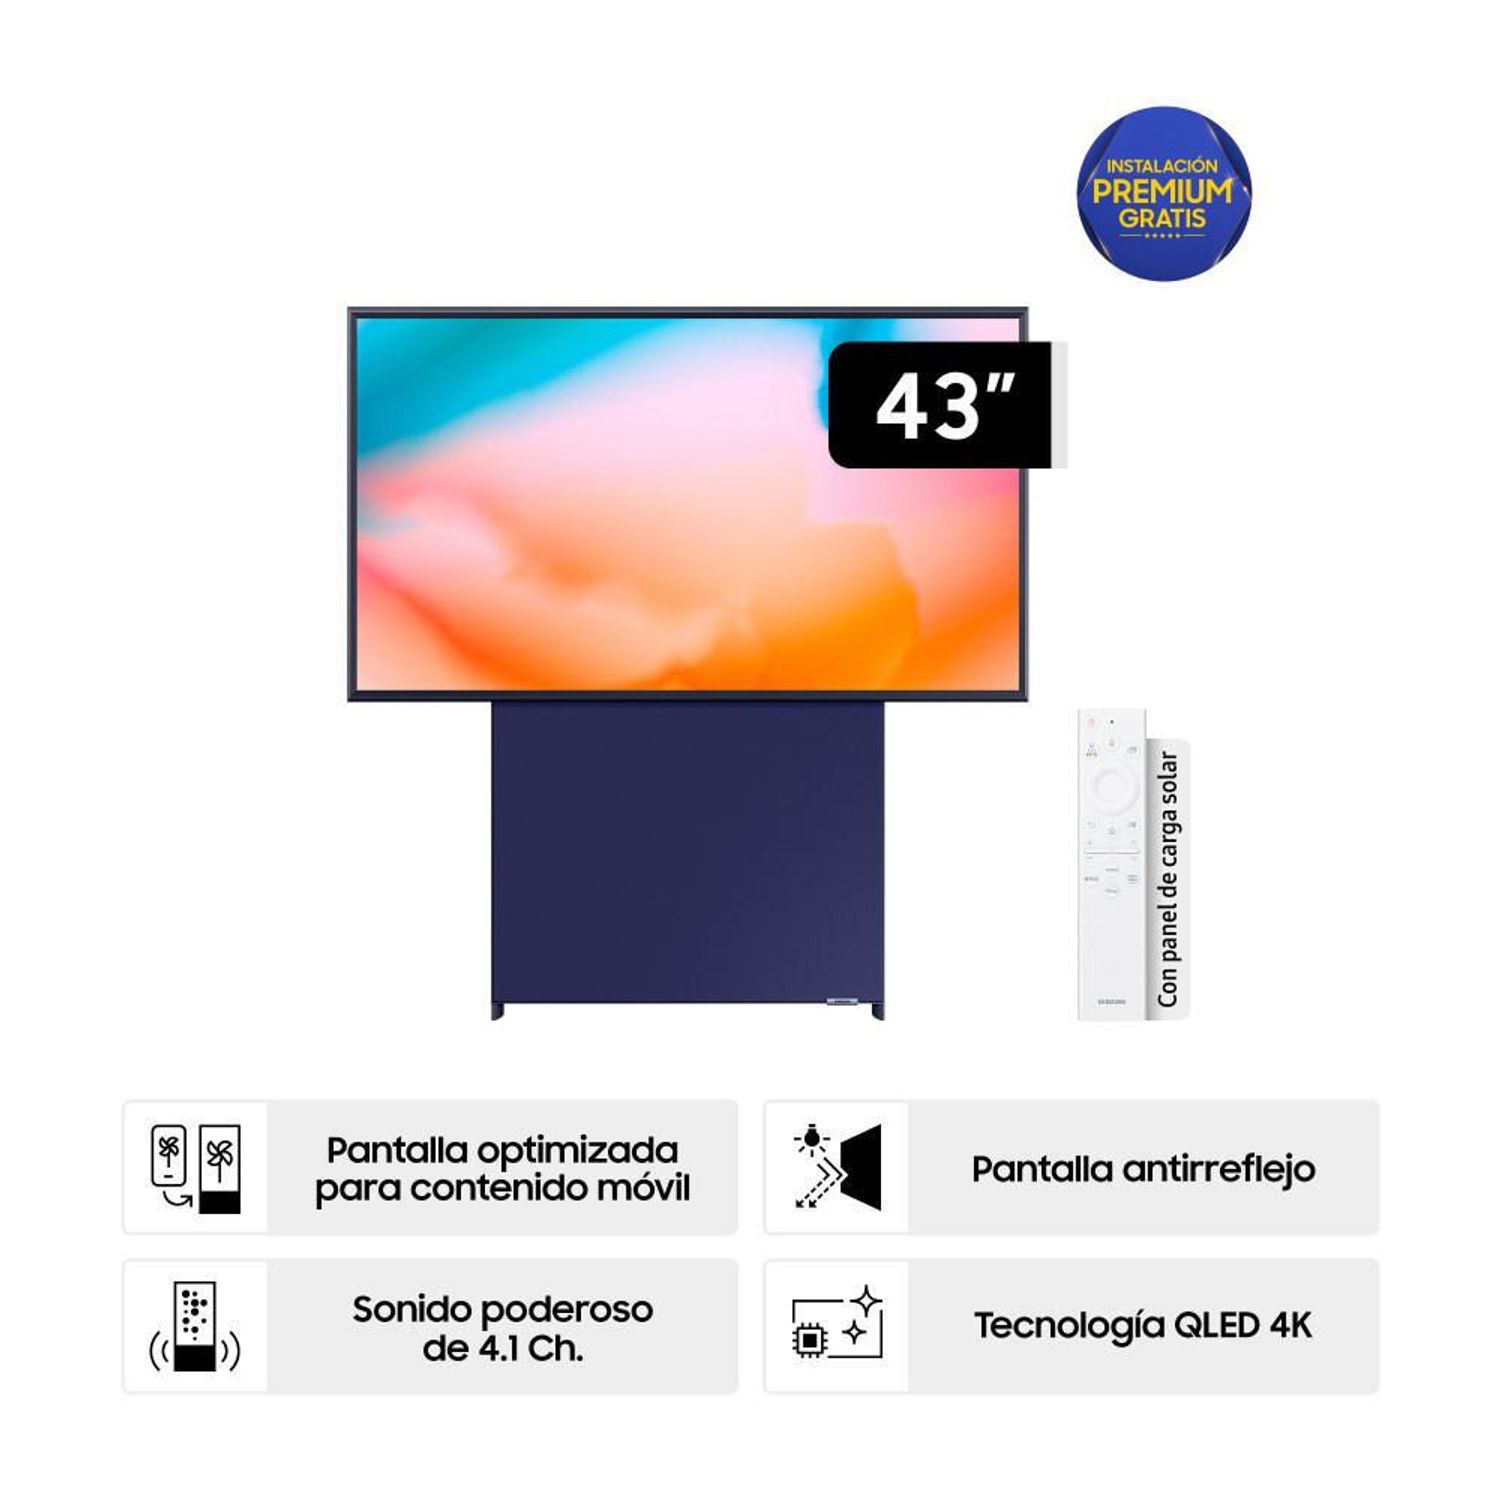 Samsung y sus TV de bajo consumo. ¿Otro fraude al estilo de los de